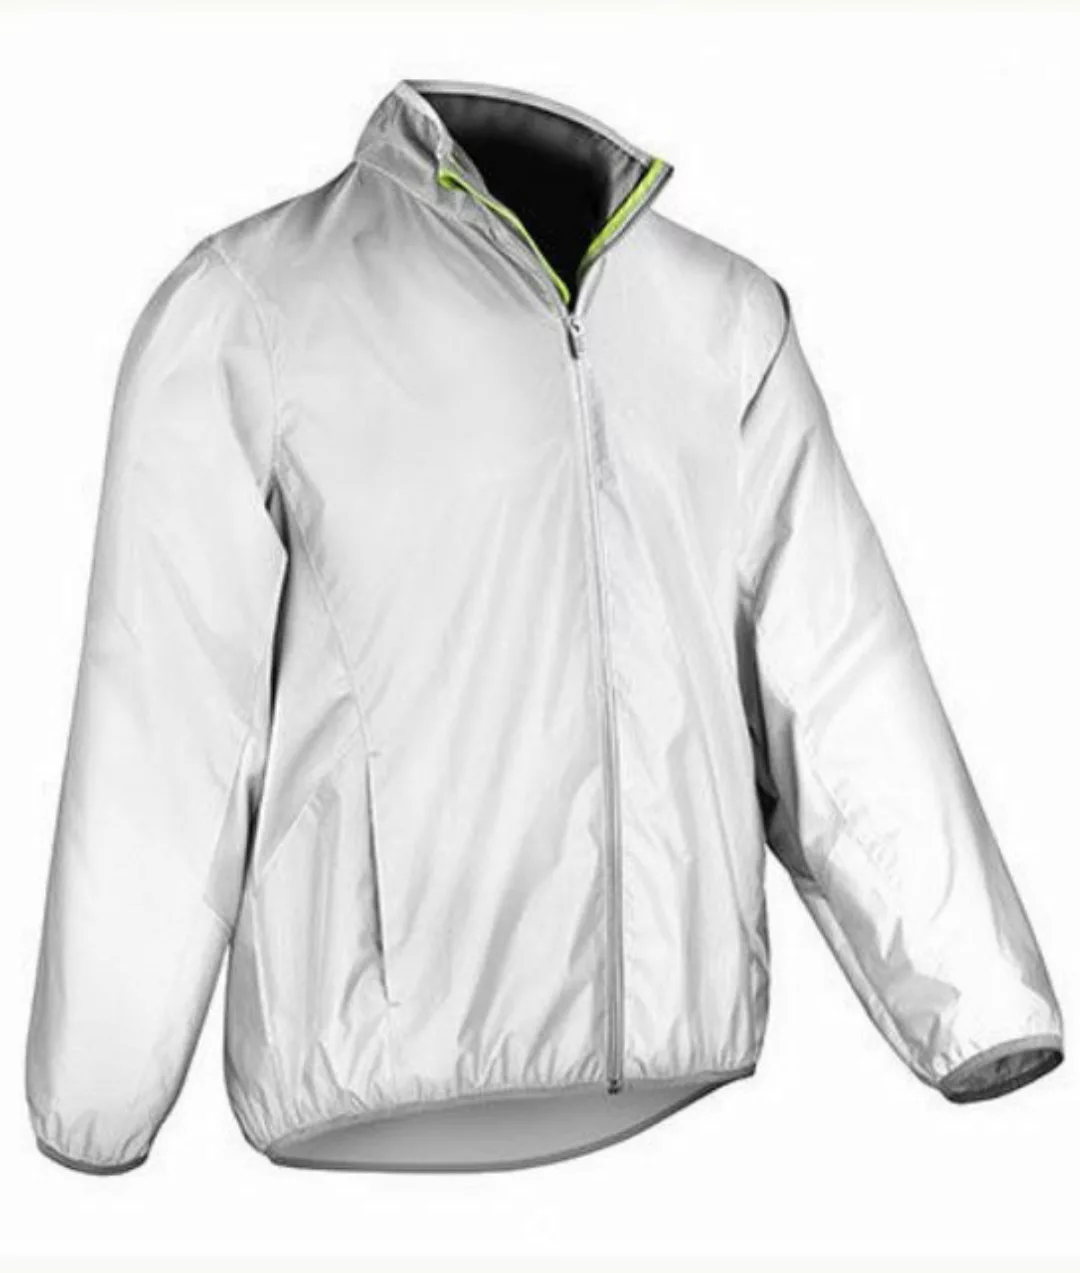 SPIRO Outdoorjacke Luxe Reflectex Hi-Vis Jacket Wind-und Spritzwasserabweis günstig online kaufen